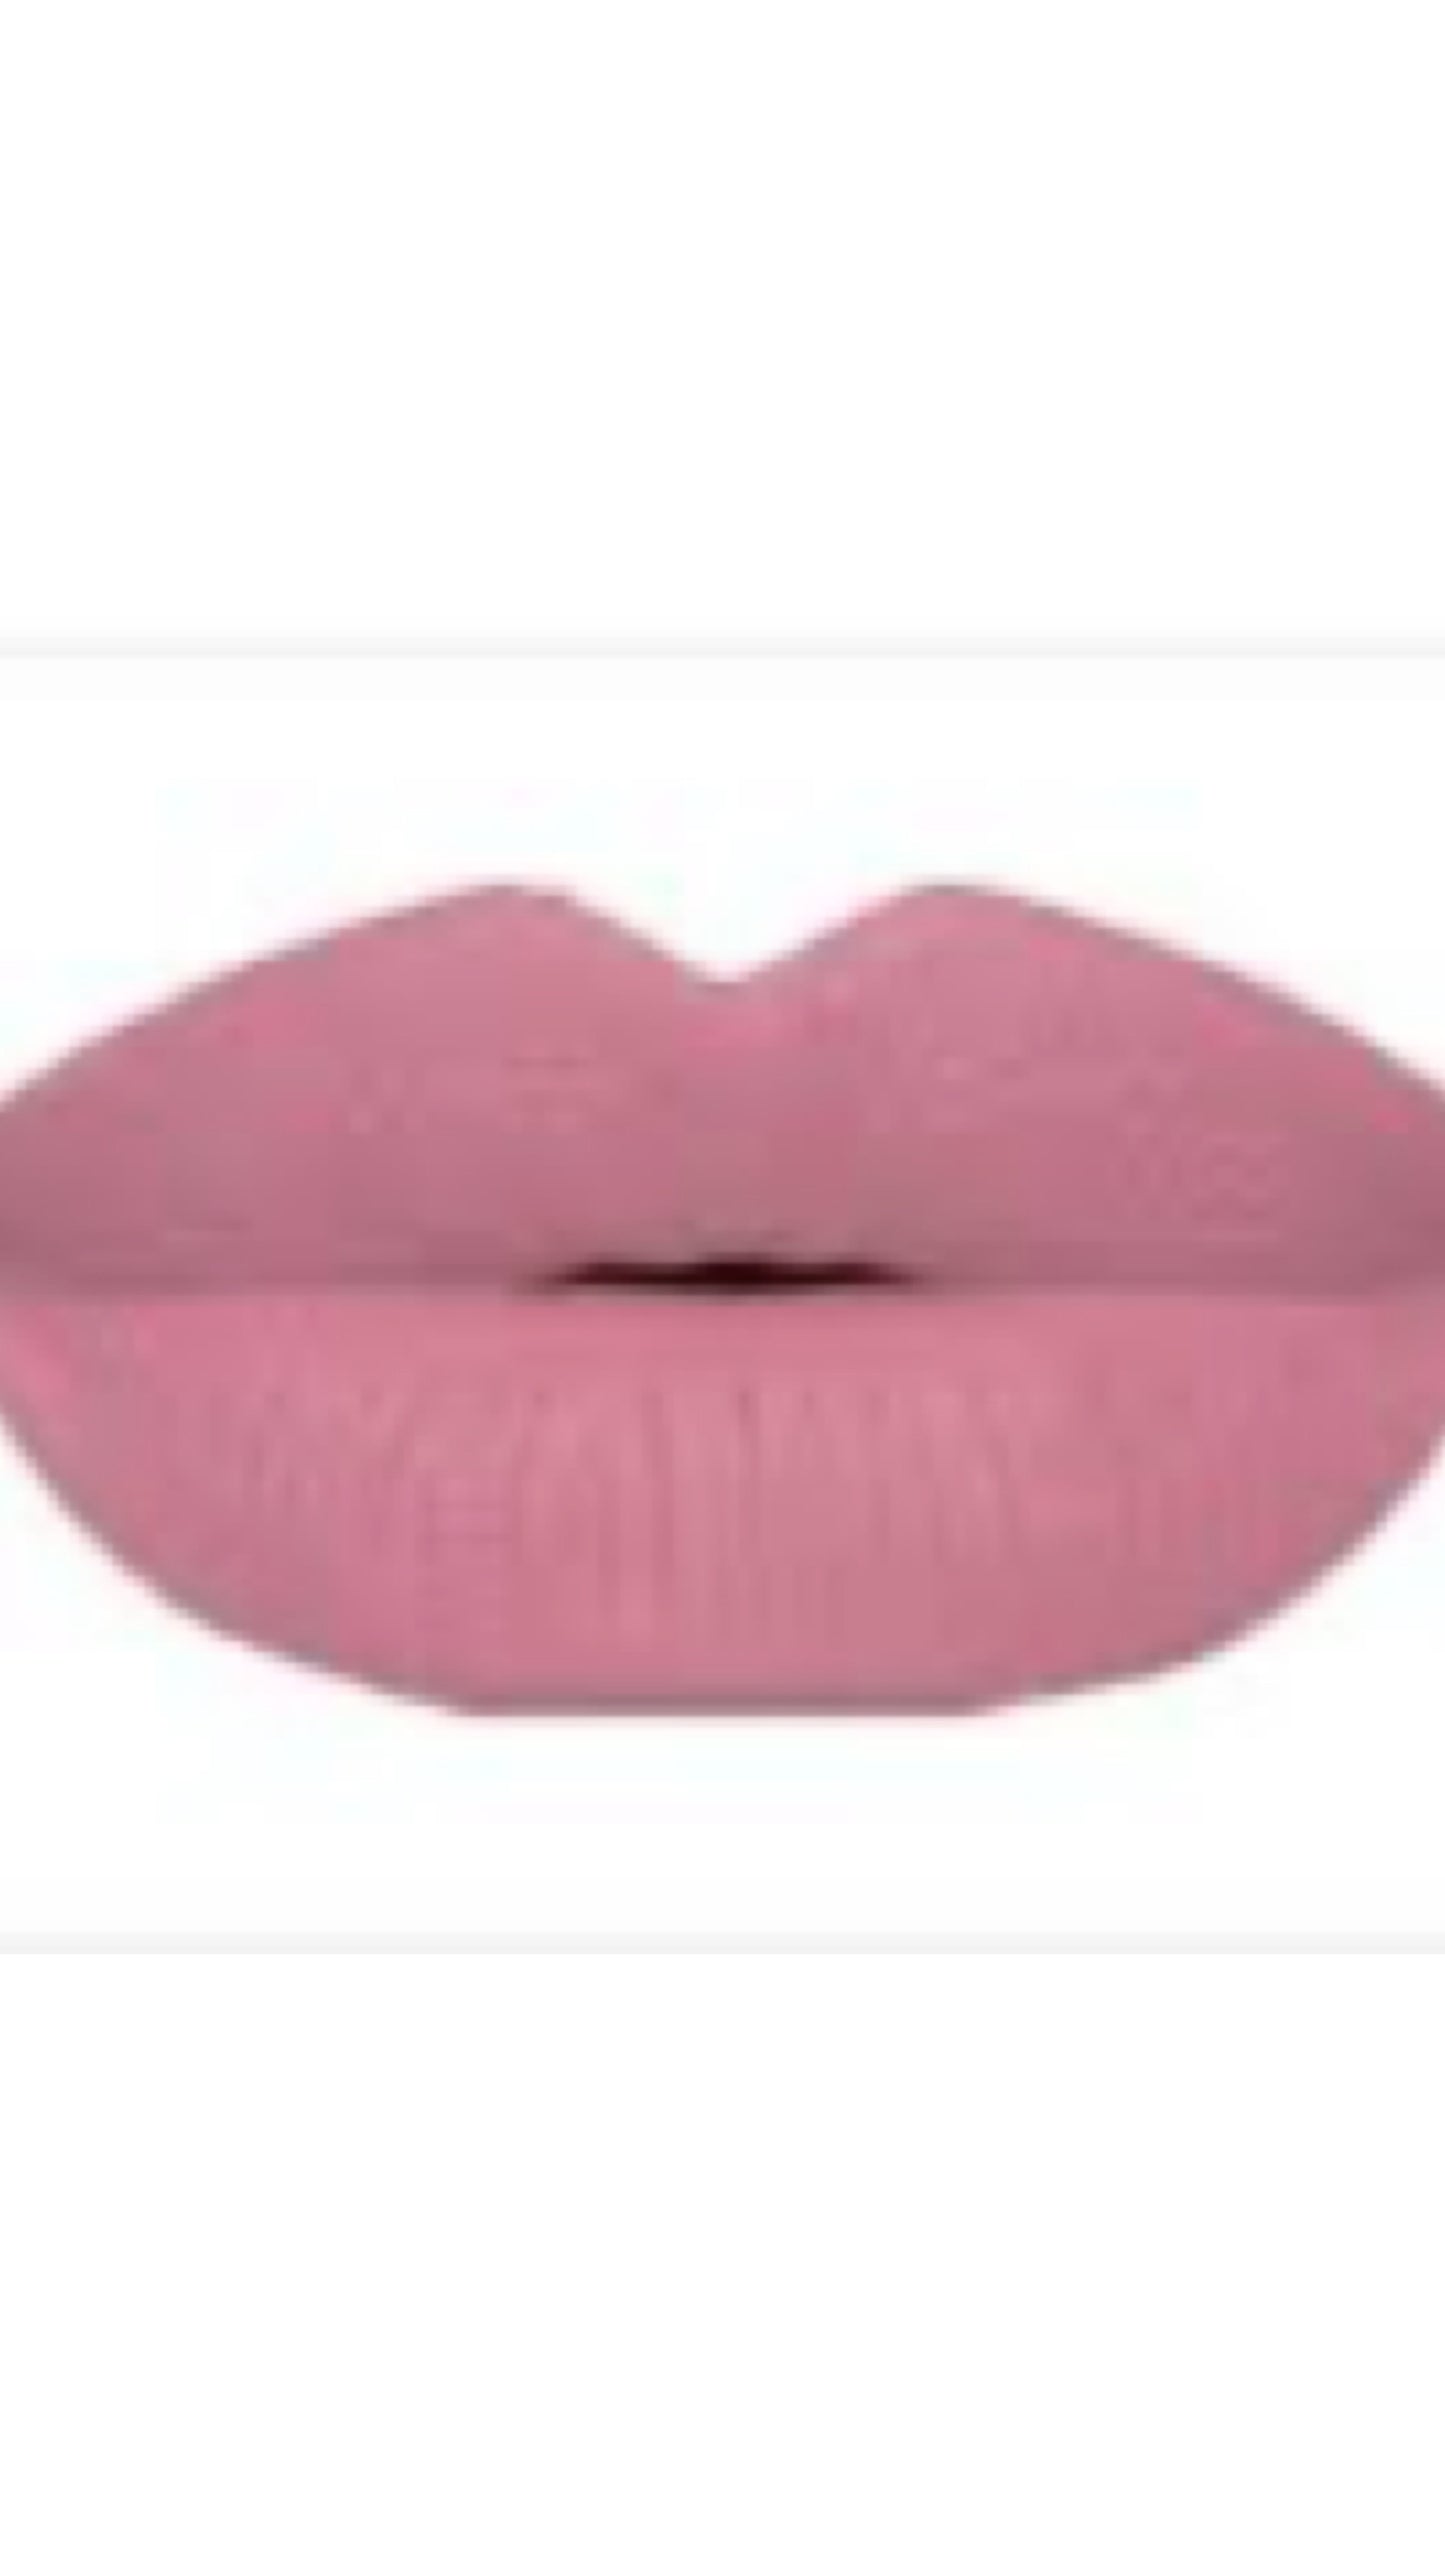 “Lavish” Velvet Matte Liquid Lipstick